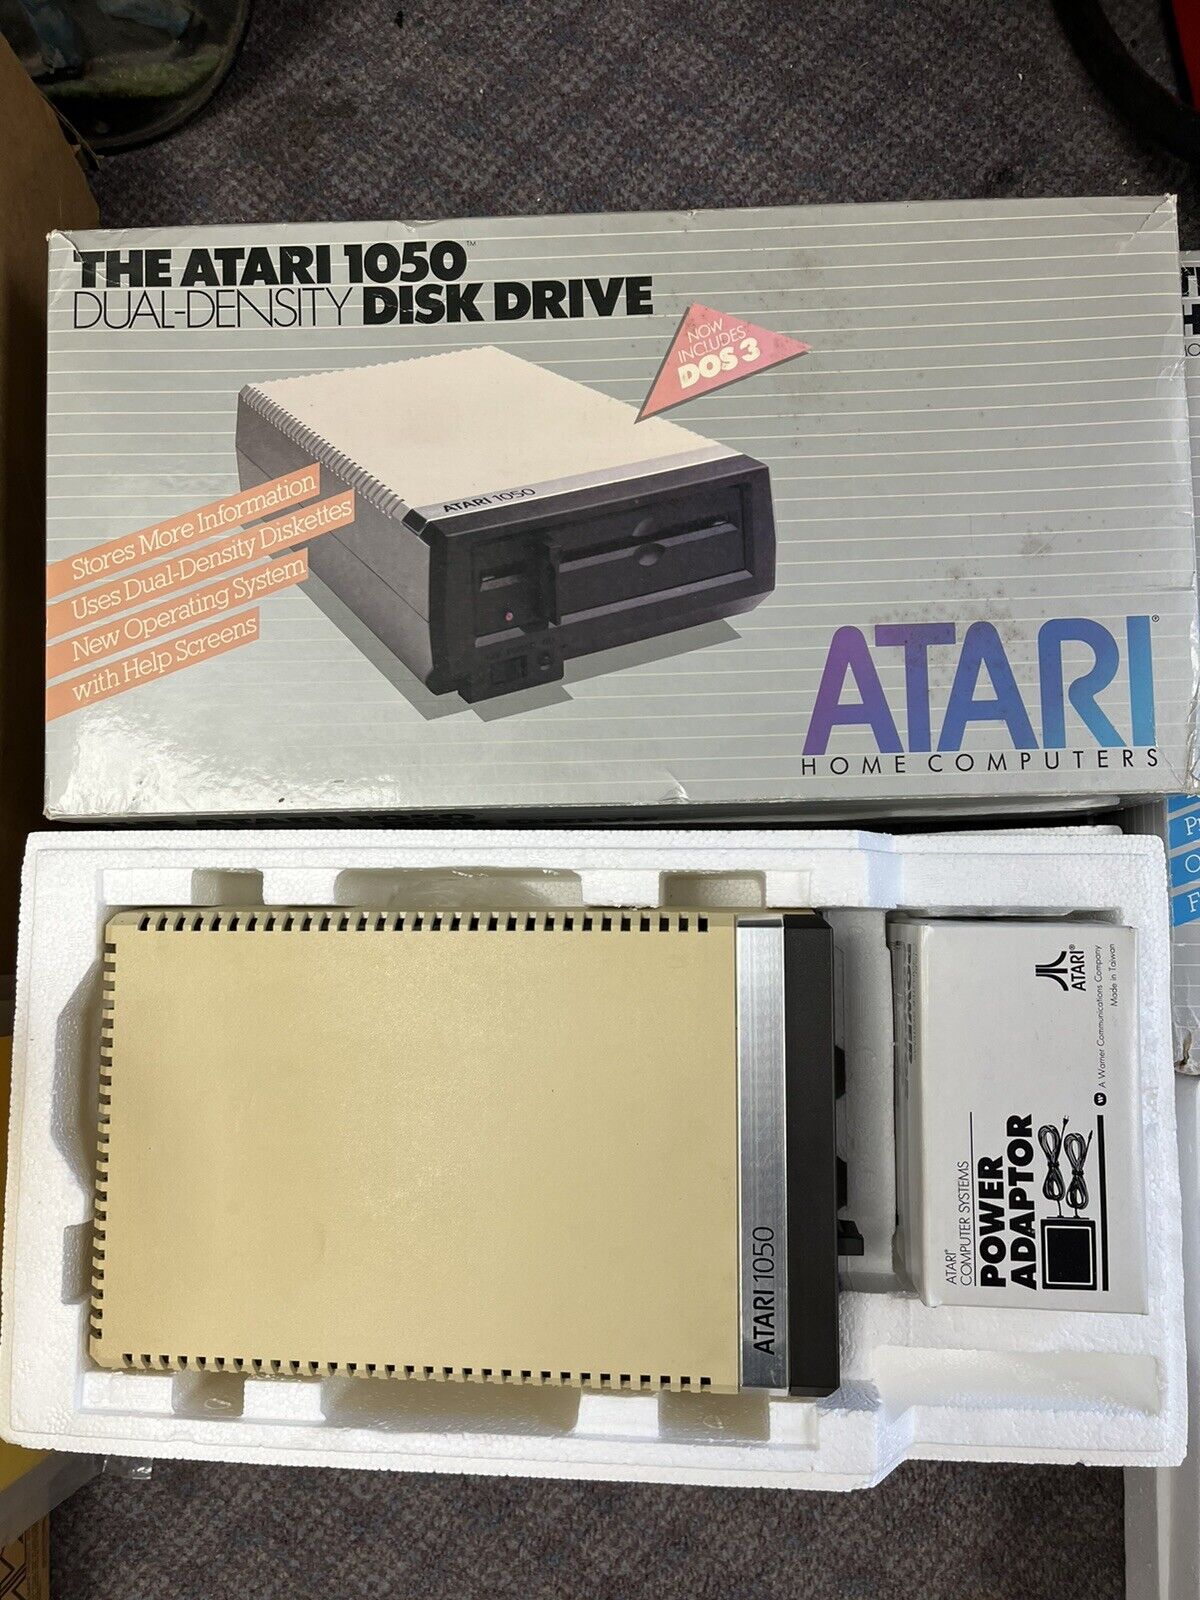 atari 800xl , games, computer , printer and more